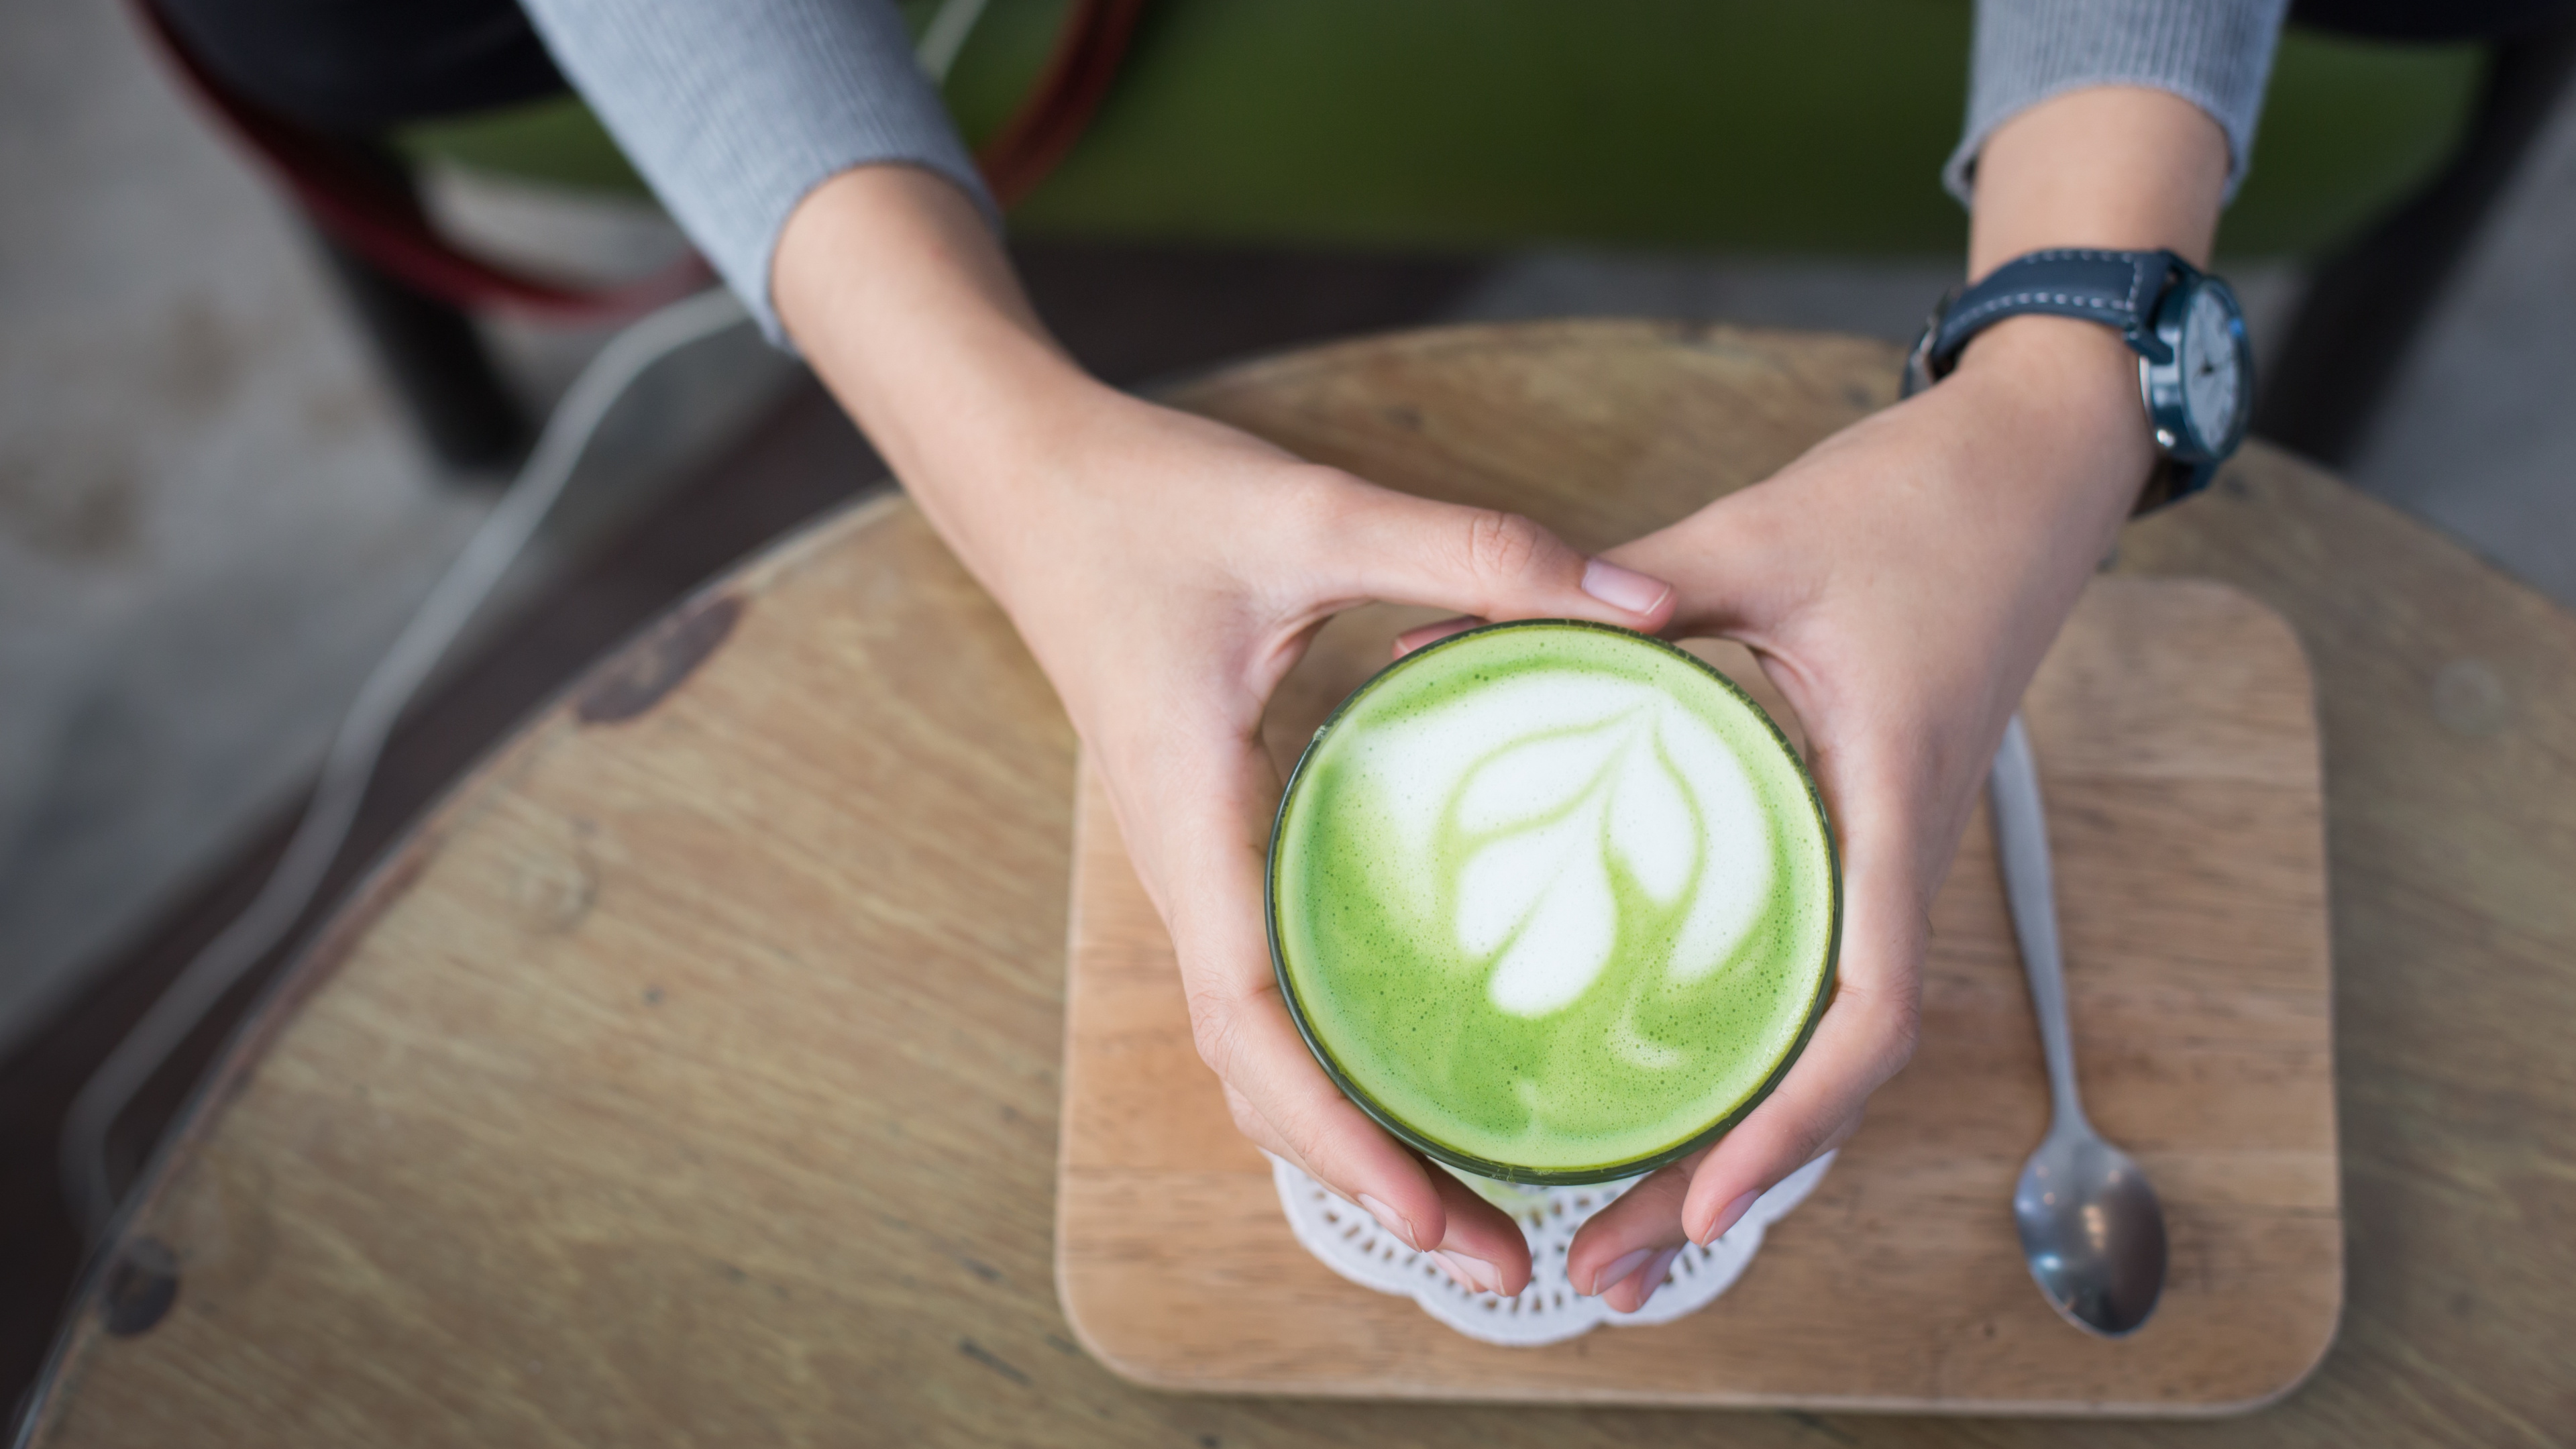 拿铁咖啡, 绿茶, 绿色的, 手, 食品 壁纸 3840x2160 允许